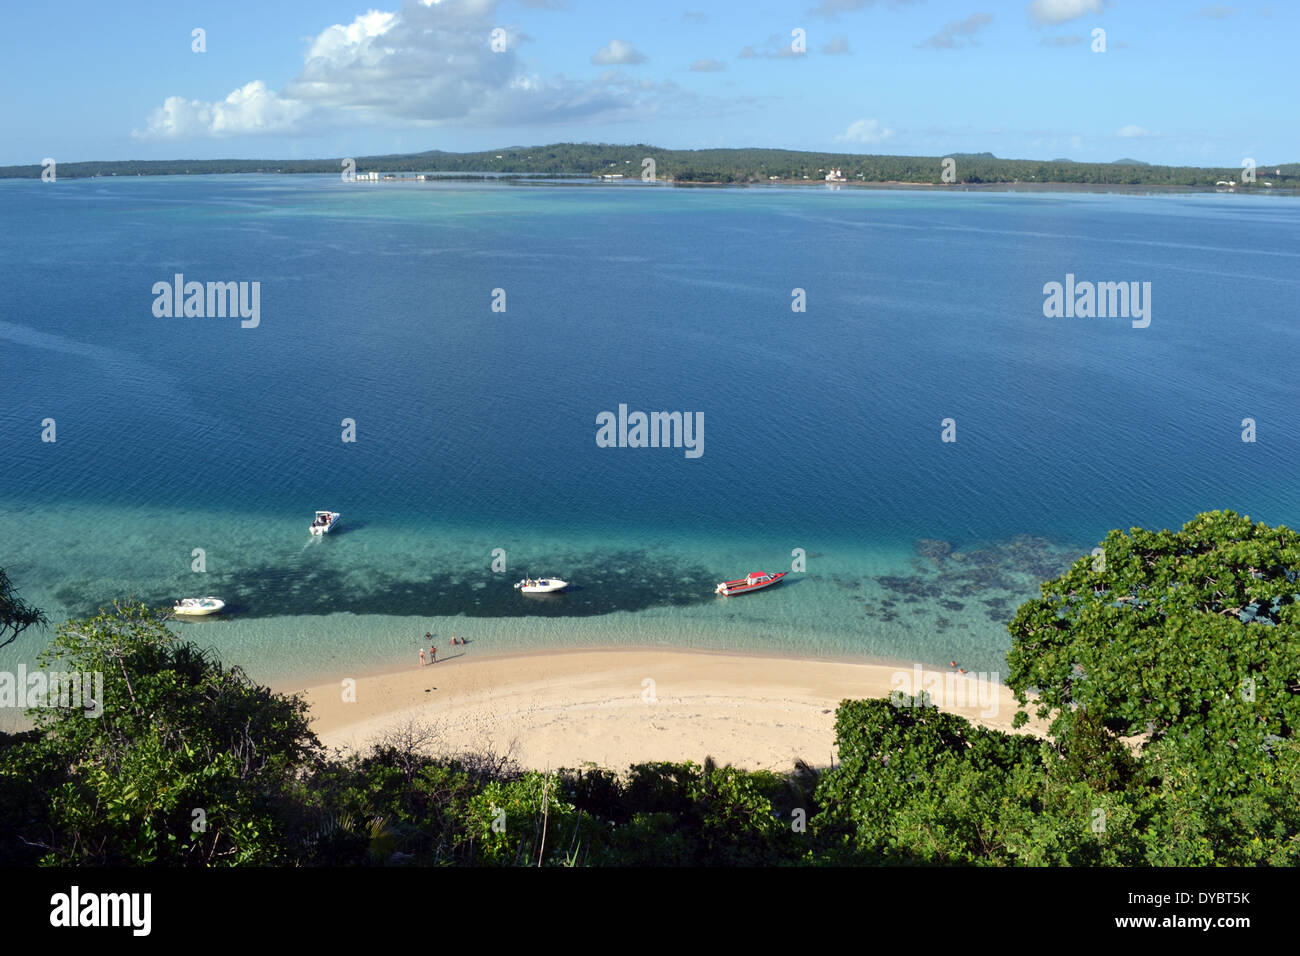 Bateaux à quai dans une plage à Nukutapu îlot, l'île de Wallis, Wallis et Futuna, de la Mélanésie, Pacifique Sud Banque D'Images